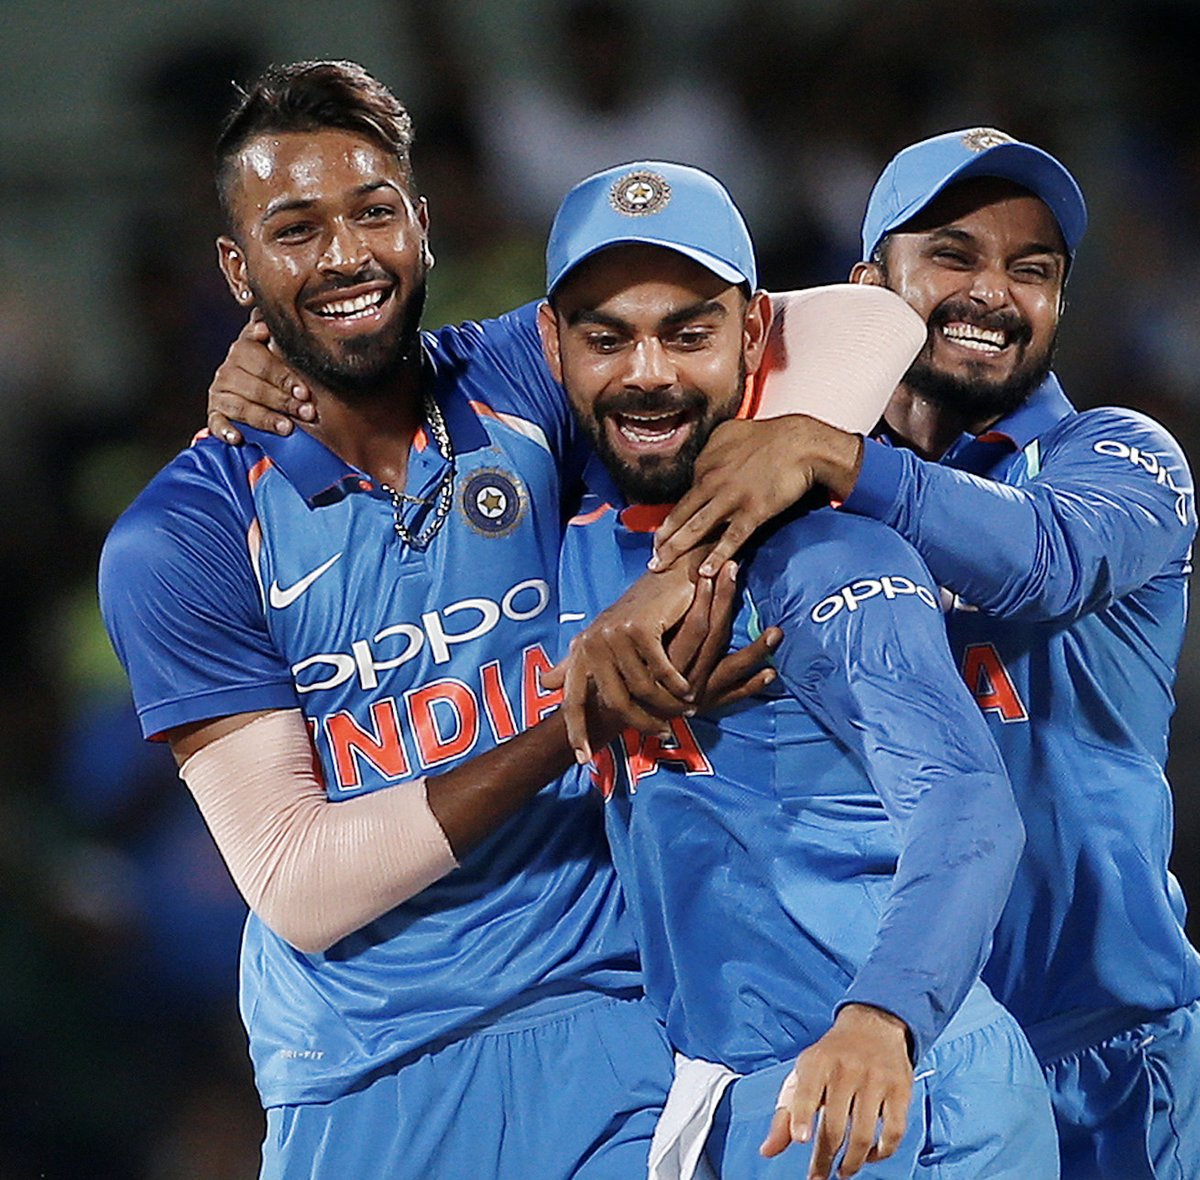 दूसरे वनडे मैच में भारत की जीत। कुलदीप ने हैट्रिक विकेट लिया।